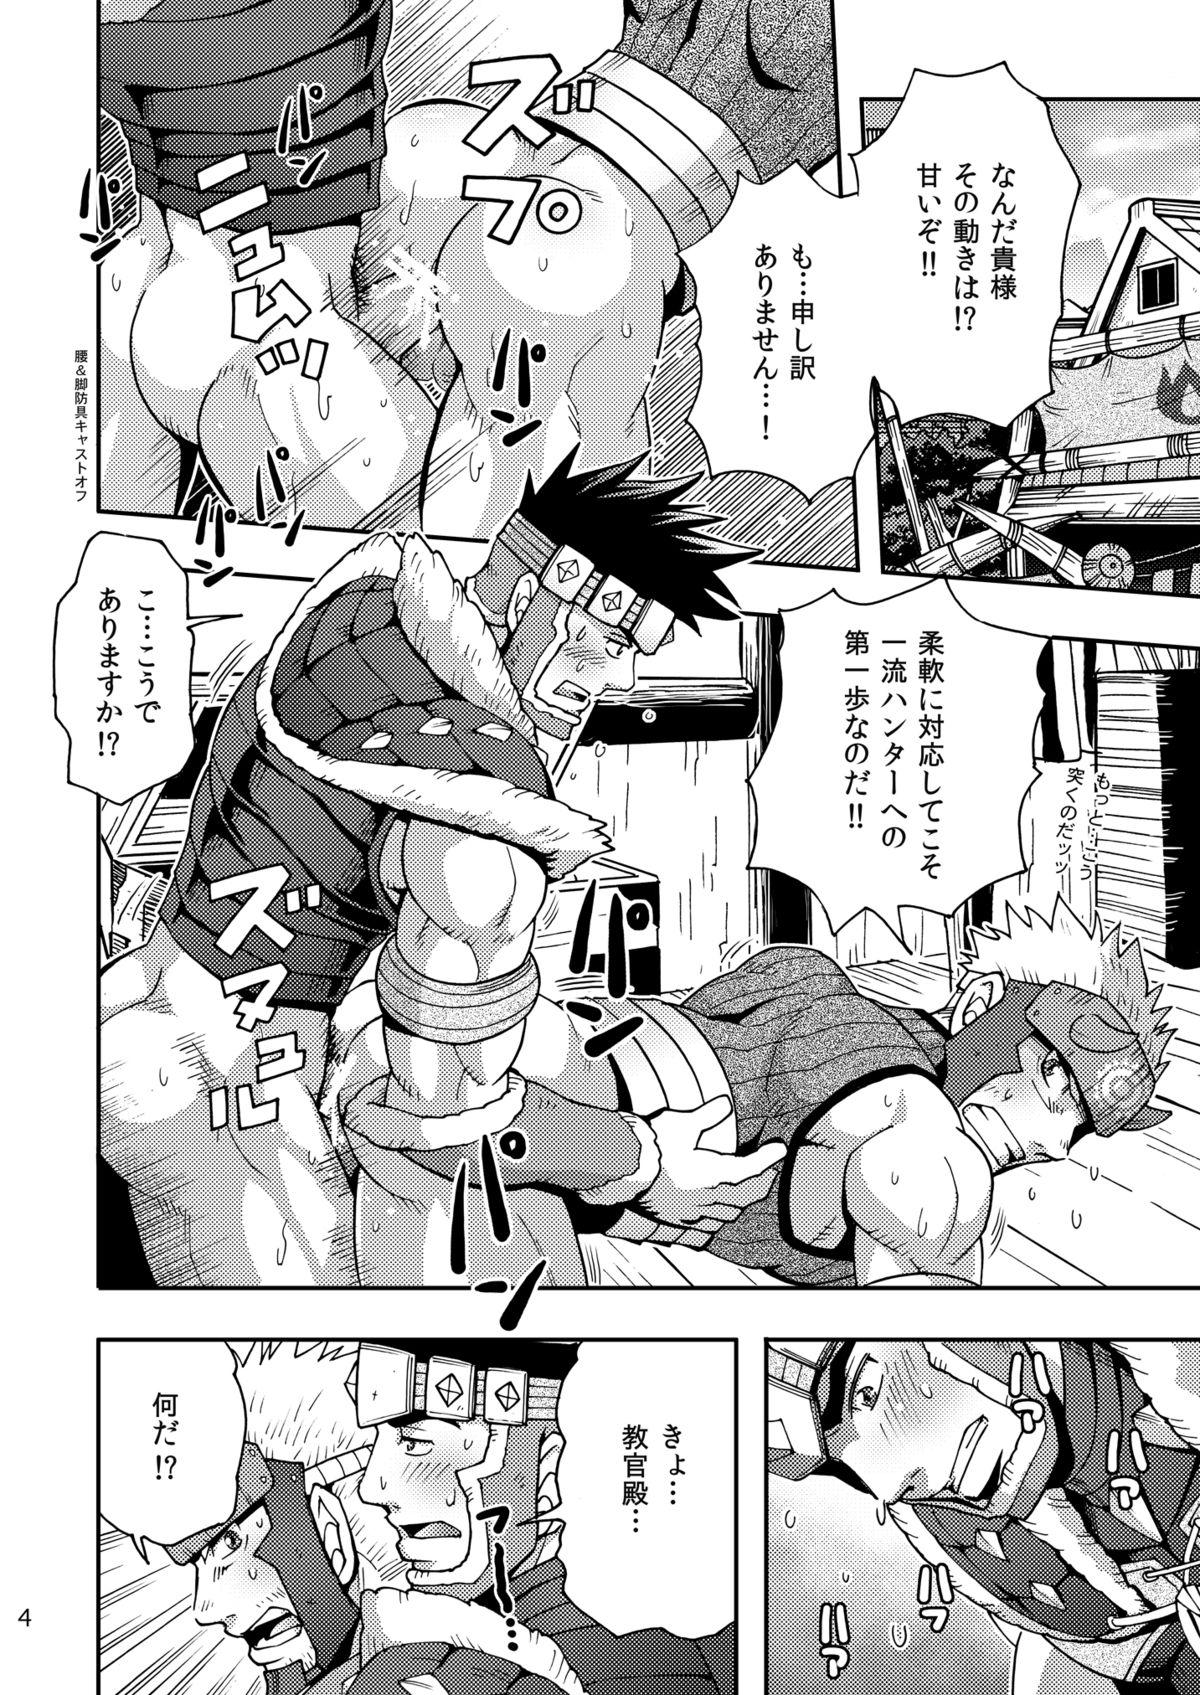 Que Wagahai no Nitro Dake ga Bakuhatsushi Souna noda! - Monster hunter Tattoo - Page 3